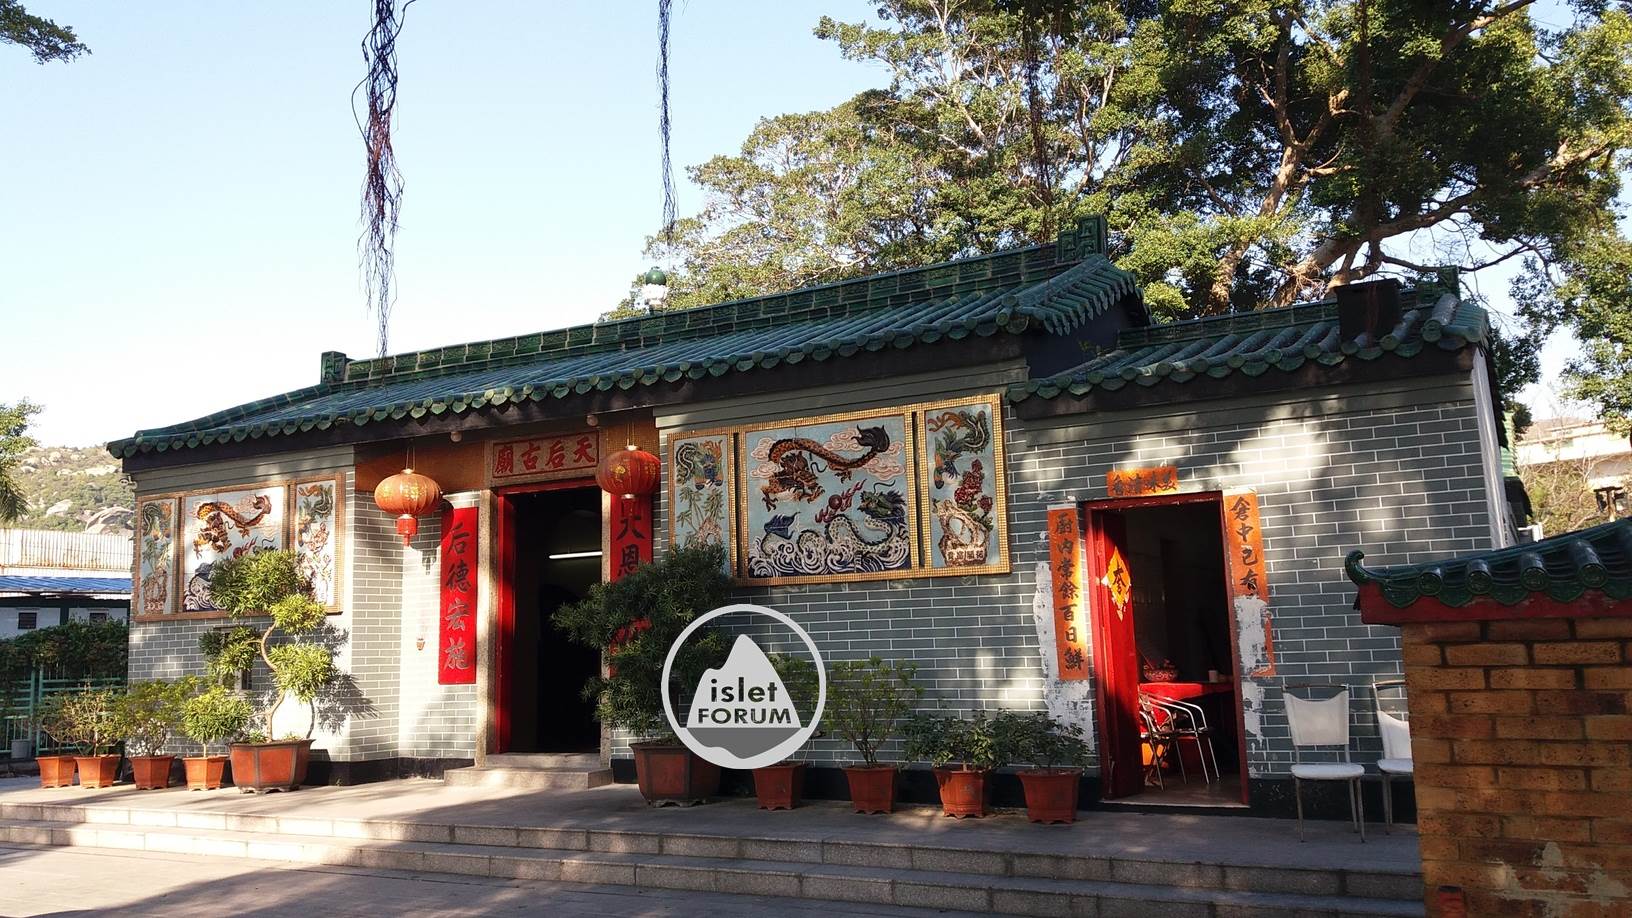 龍鼓灘天后廟lung kwu tan tin hau temple (2).jpg